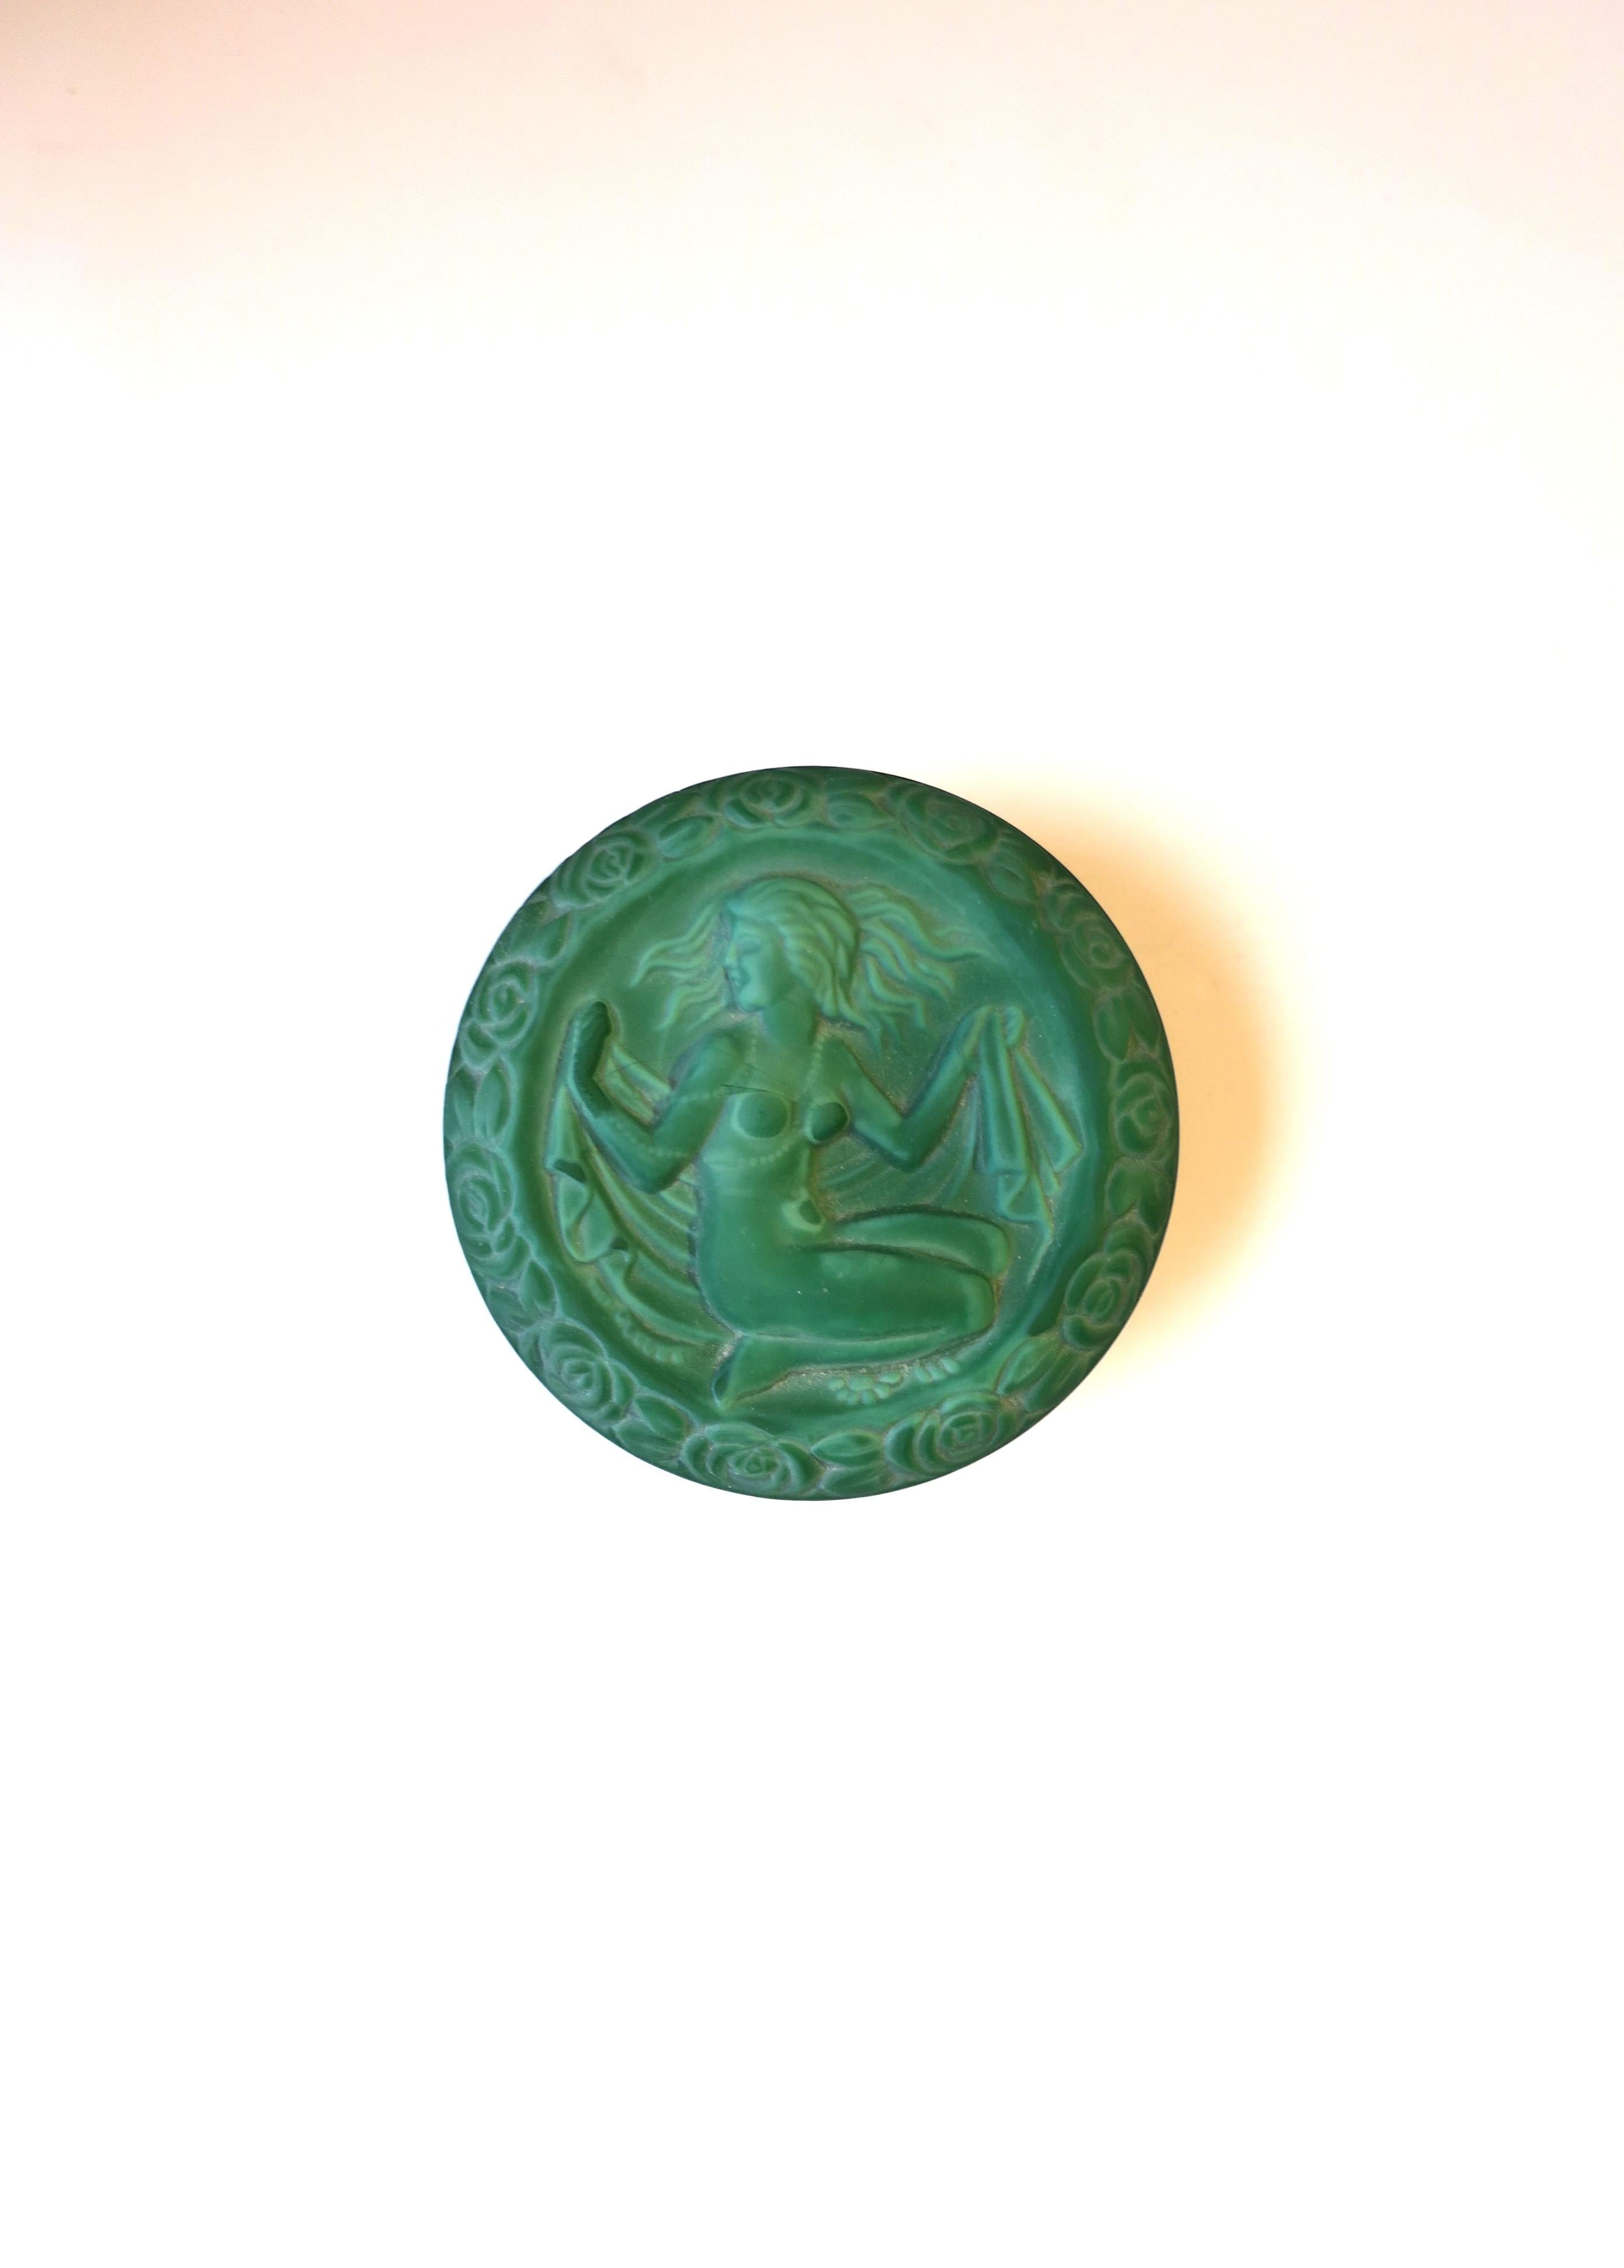 Une belle boîte en verre de malachite verte faite à la main avec un relief féminin dans le style Art déco, vers la fin du 20e siècle en République tchèque. Il s'agit d'une boîte ronde avec un haut-relief représentant un nu féminin entouré de fleurs